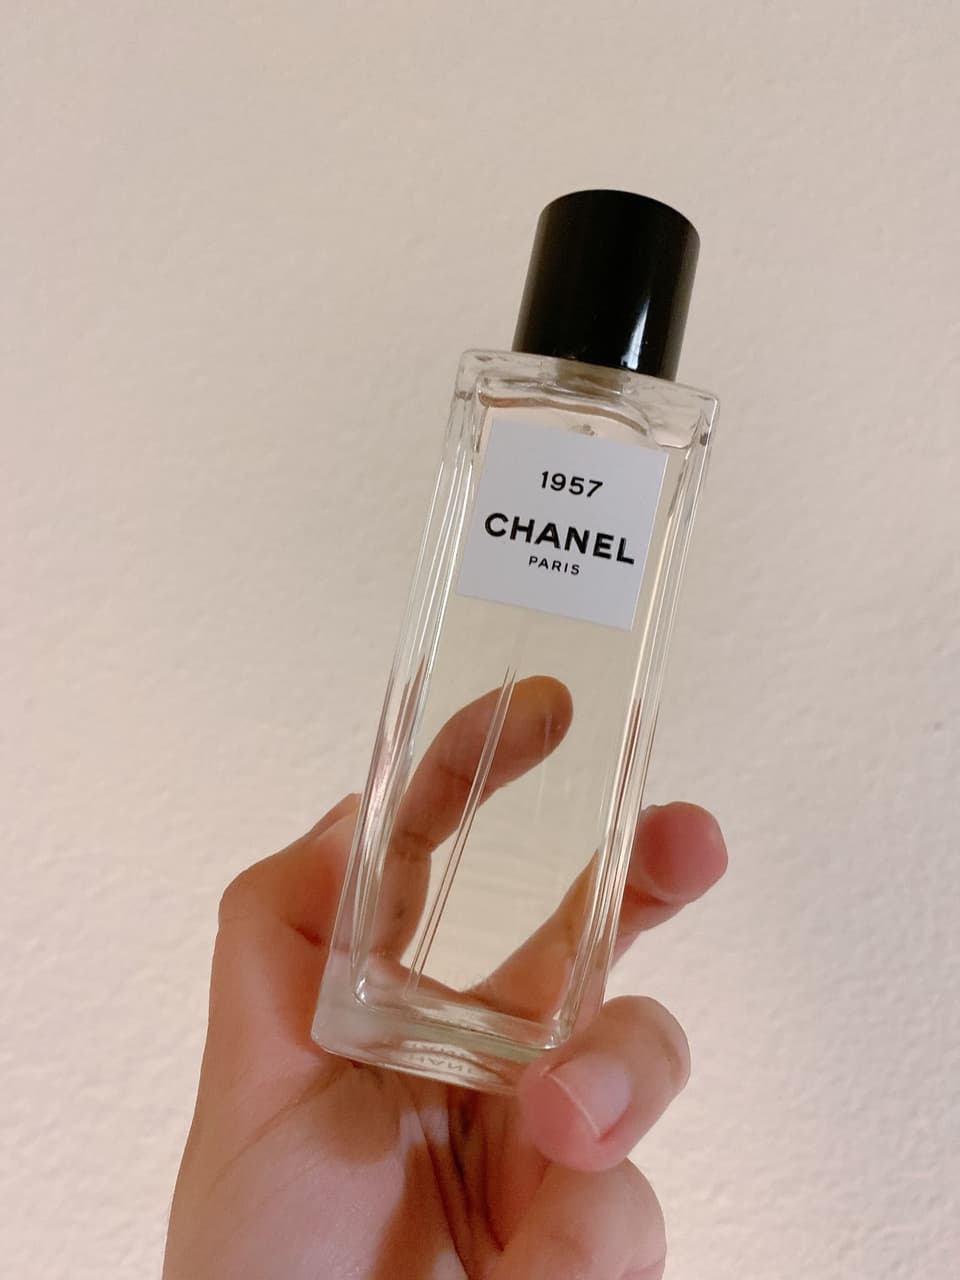 新品同様CHANEL 1957 75ml オードパルファム 香水(ユニセックス)